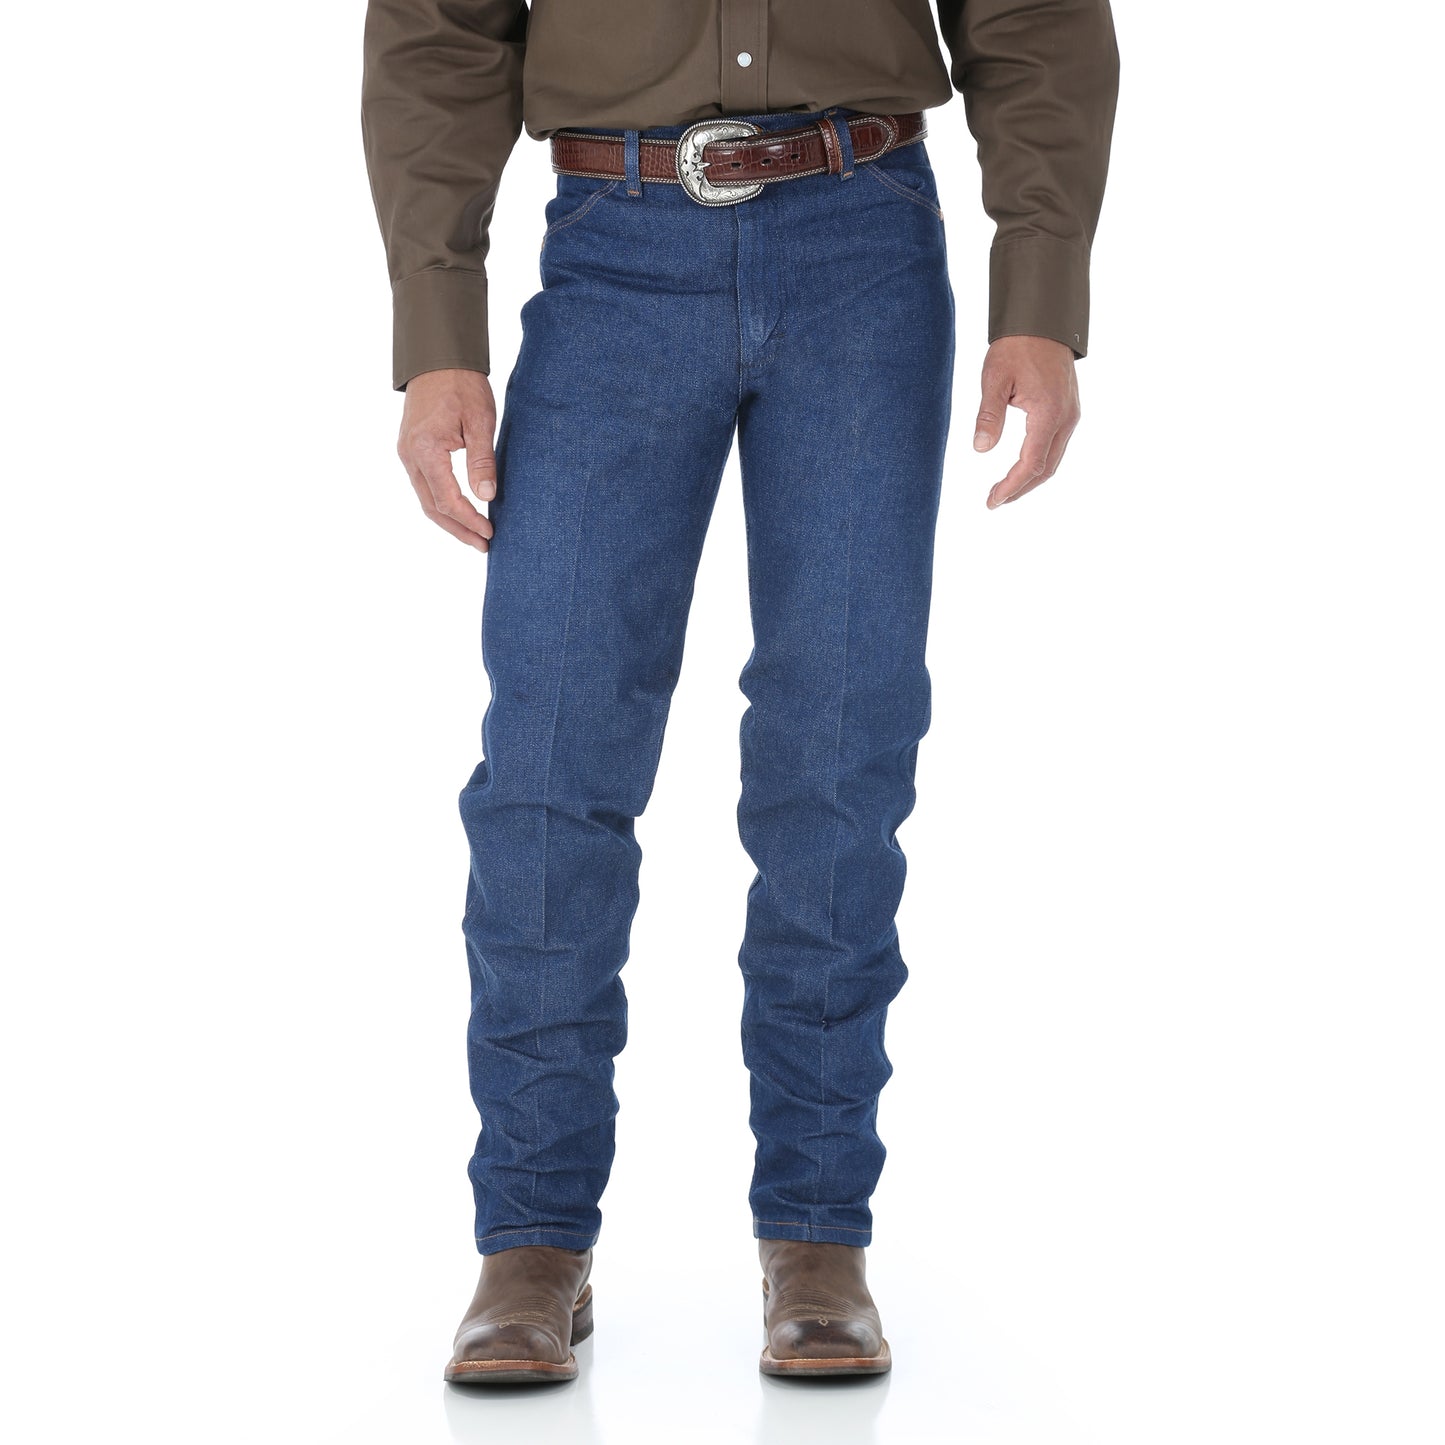 Wrangler Men's Rigid Big & Long Cowboy Cut Original Fit Jean